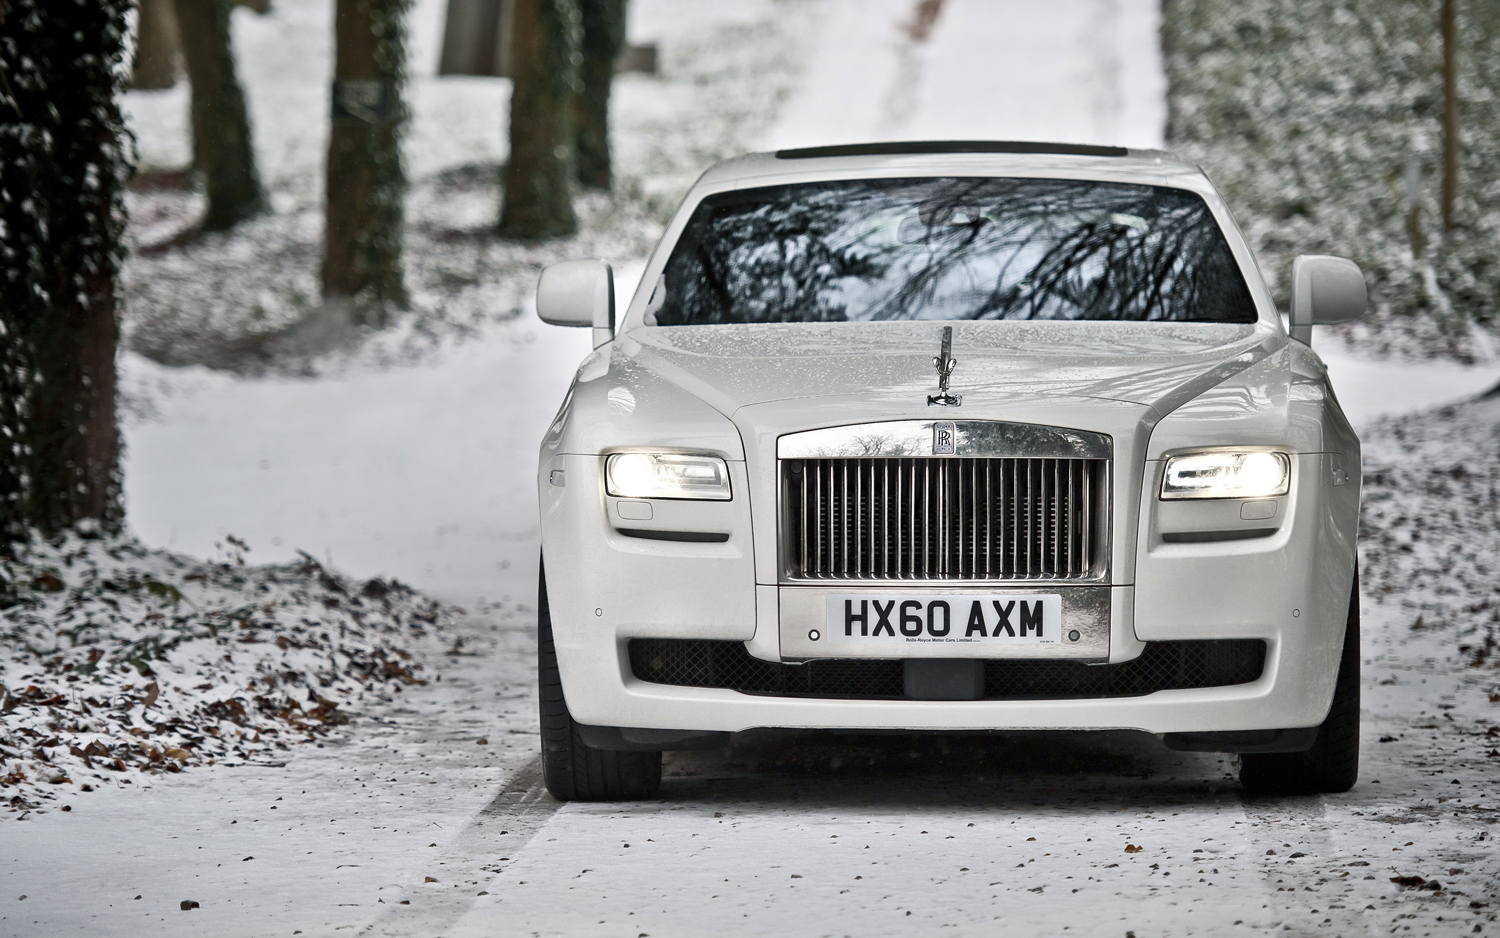 Rolls-Royce Ghost #9